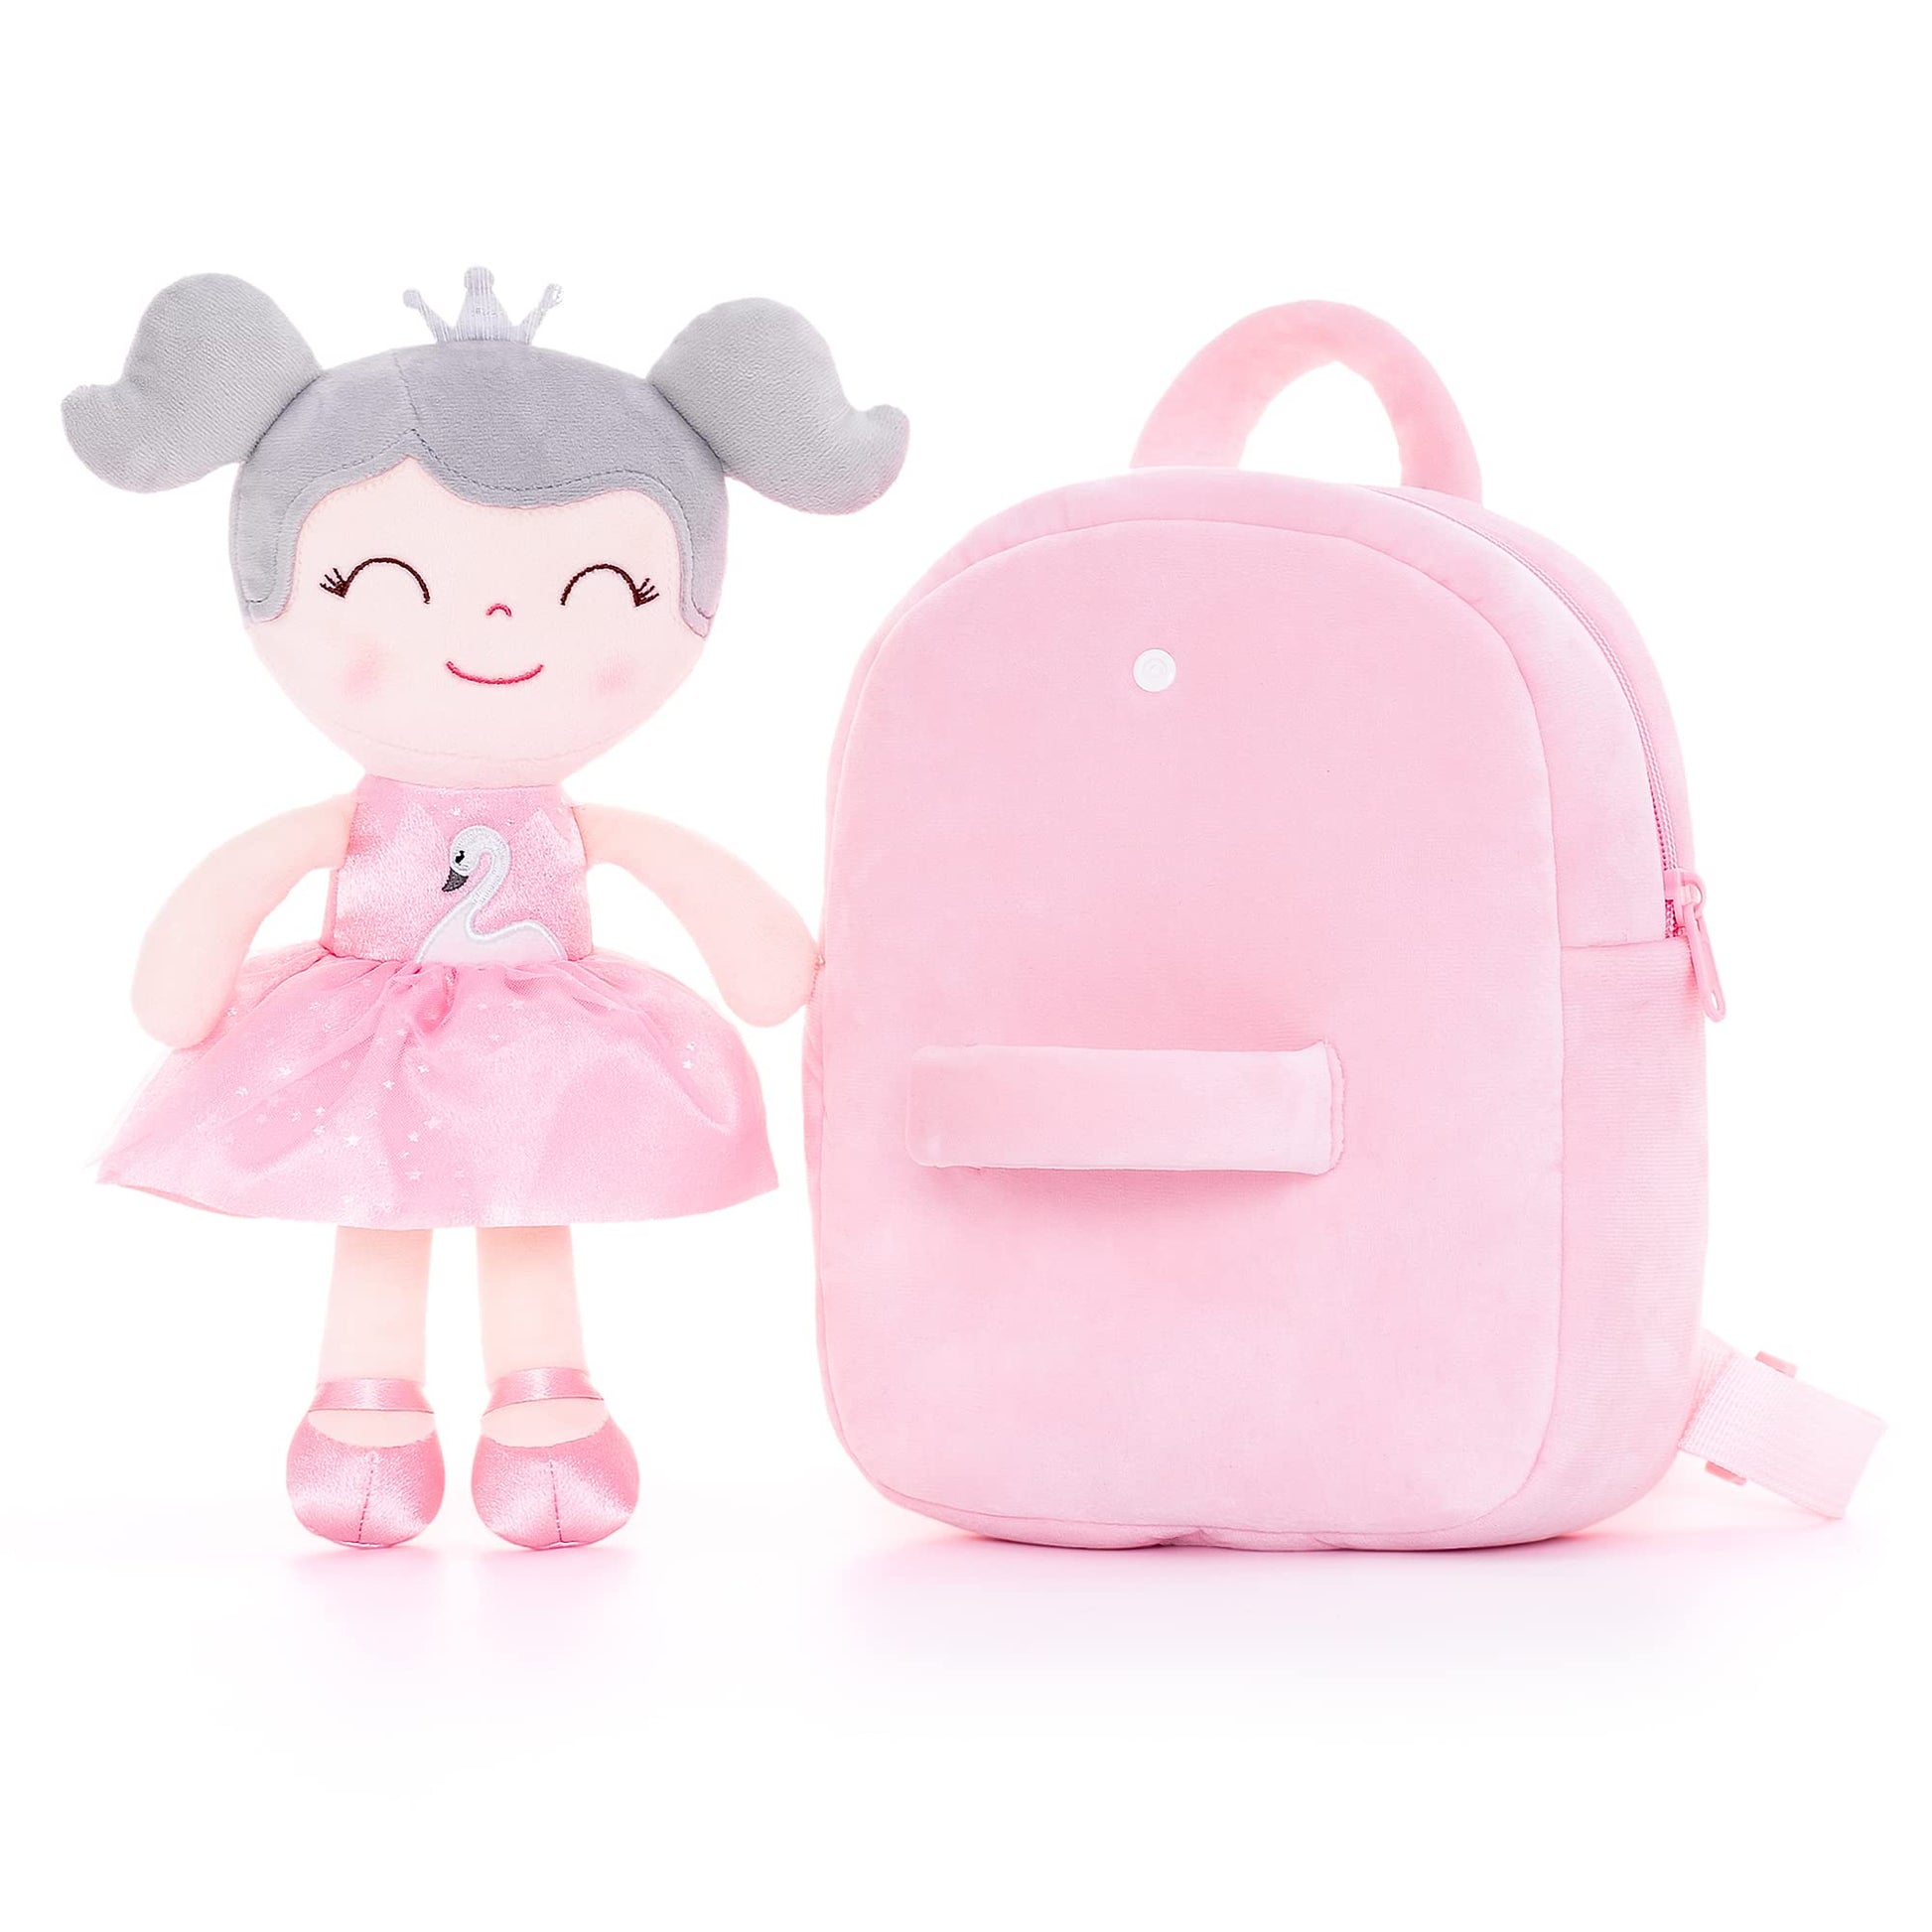 Gloveleya Toddler Girls Backpack for Kids